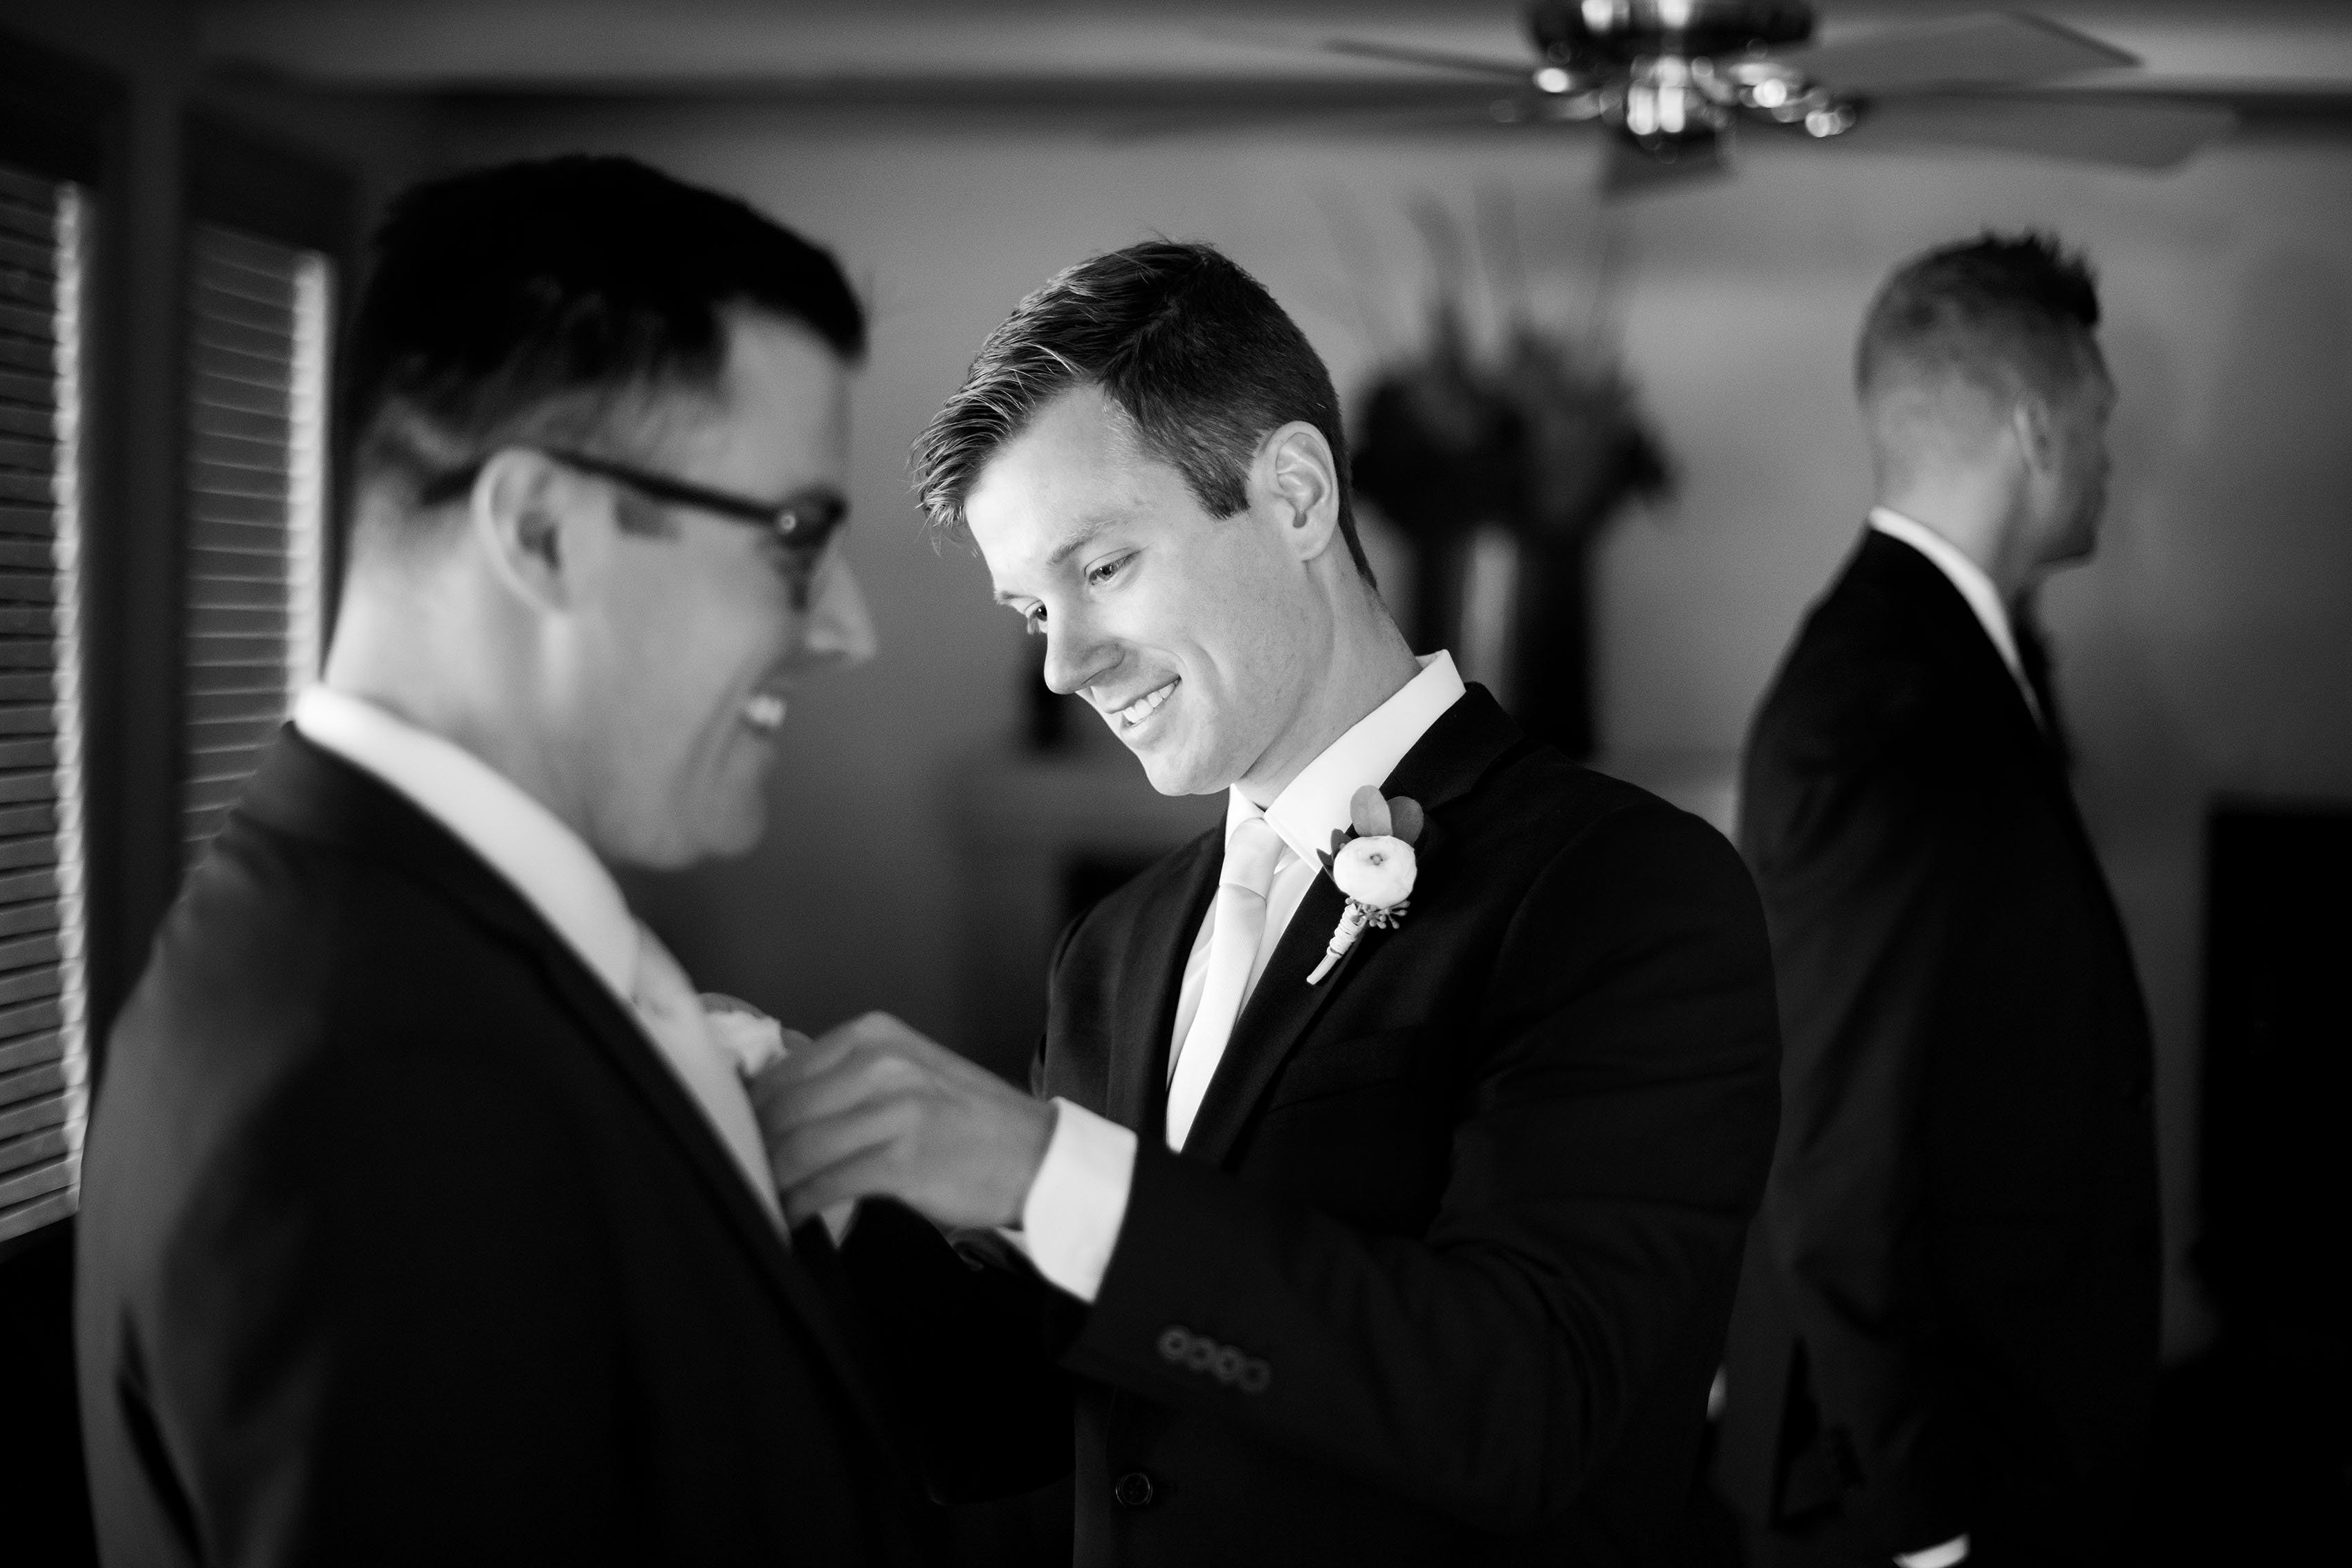 The groom helps groomsmen get ready before the wedding